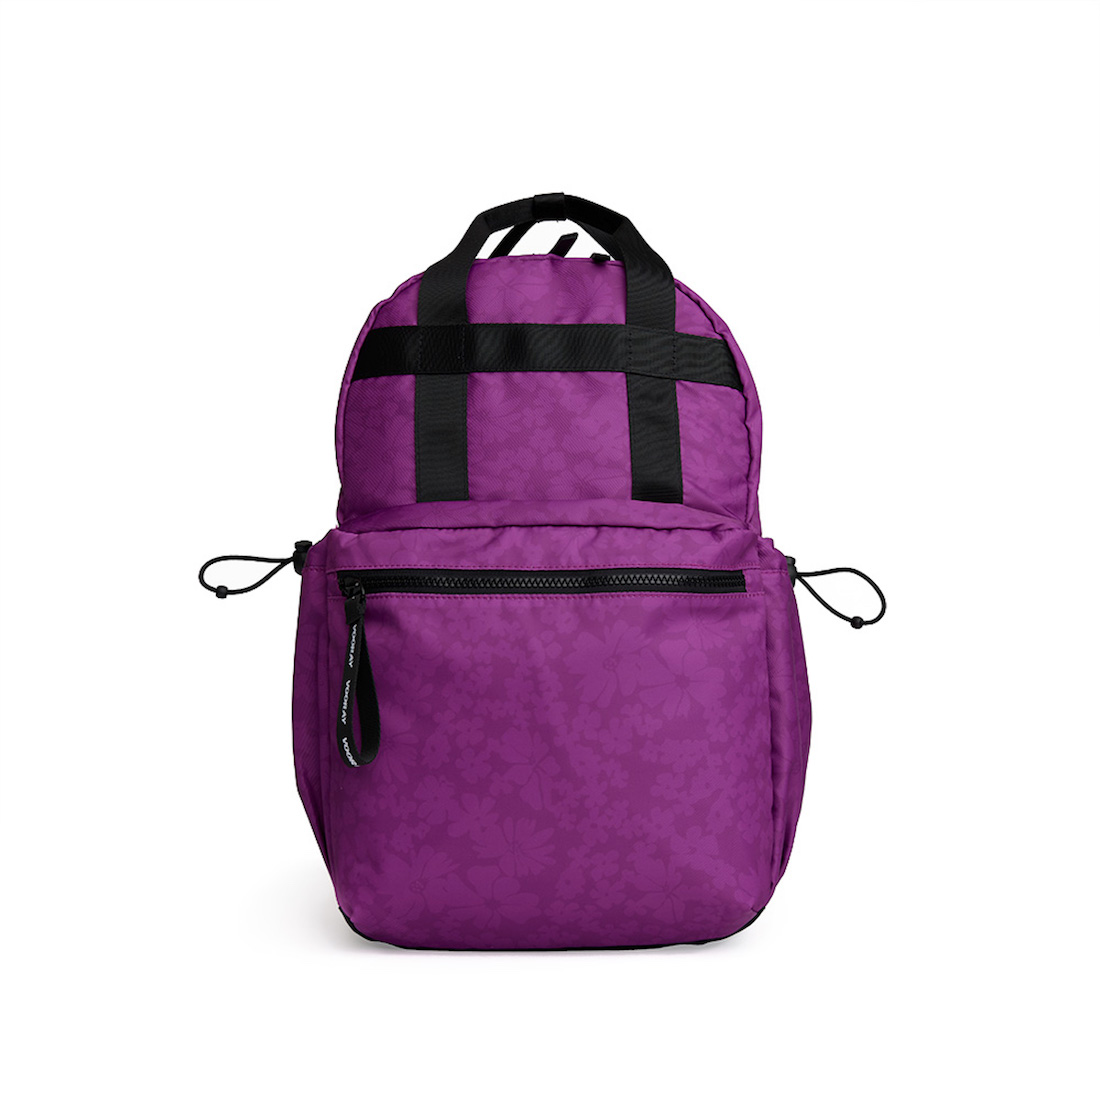 VOORAY Katie Backpack Violet Floral